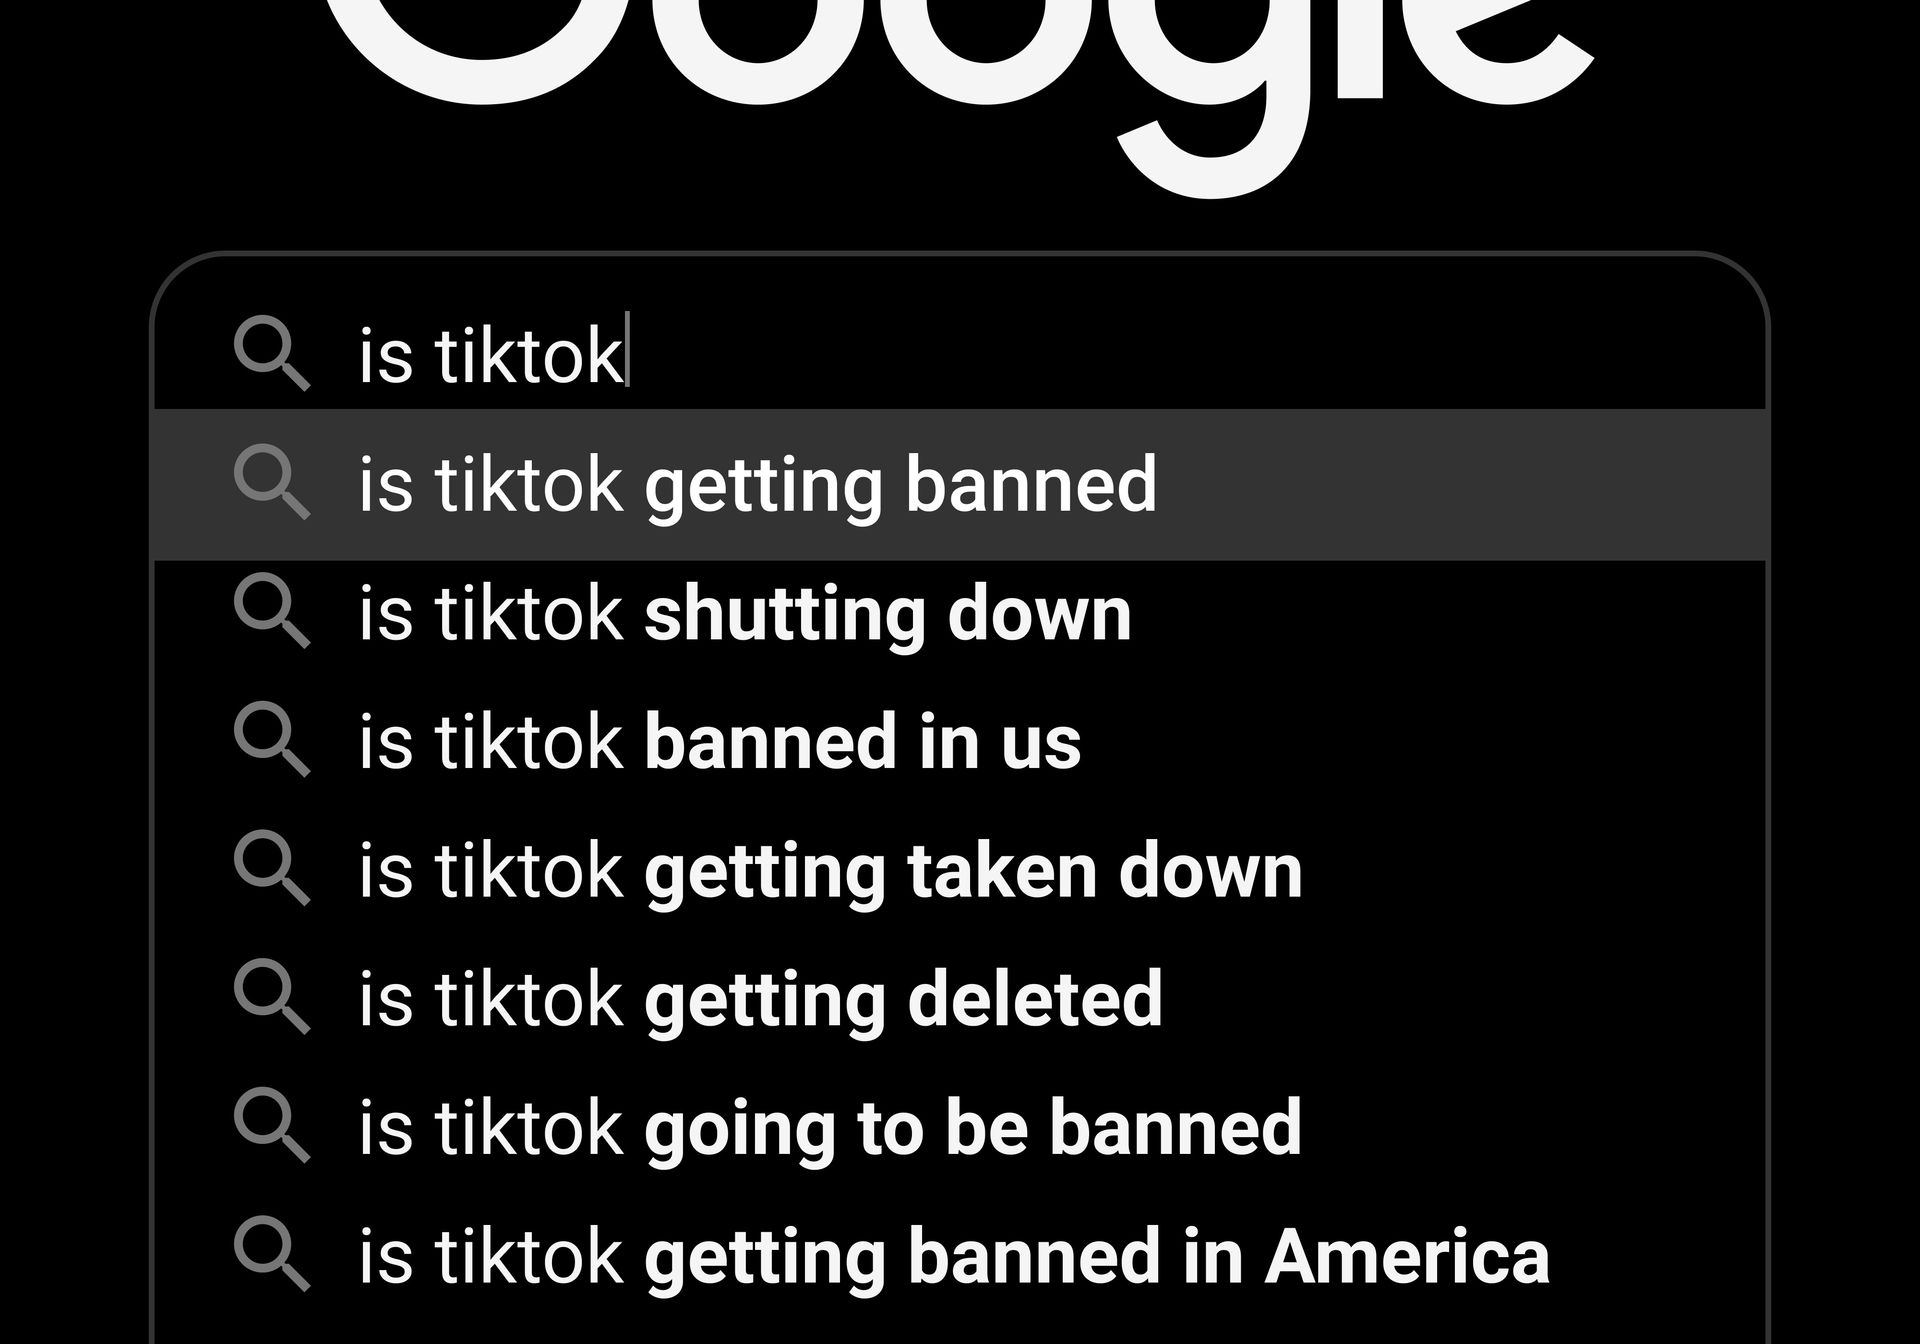 향후 질문: TikTok은 금지되거나 판매됩니까?